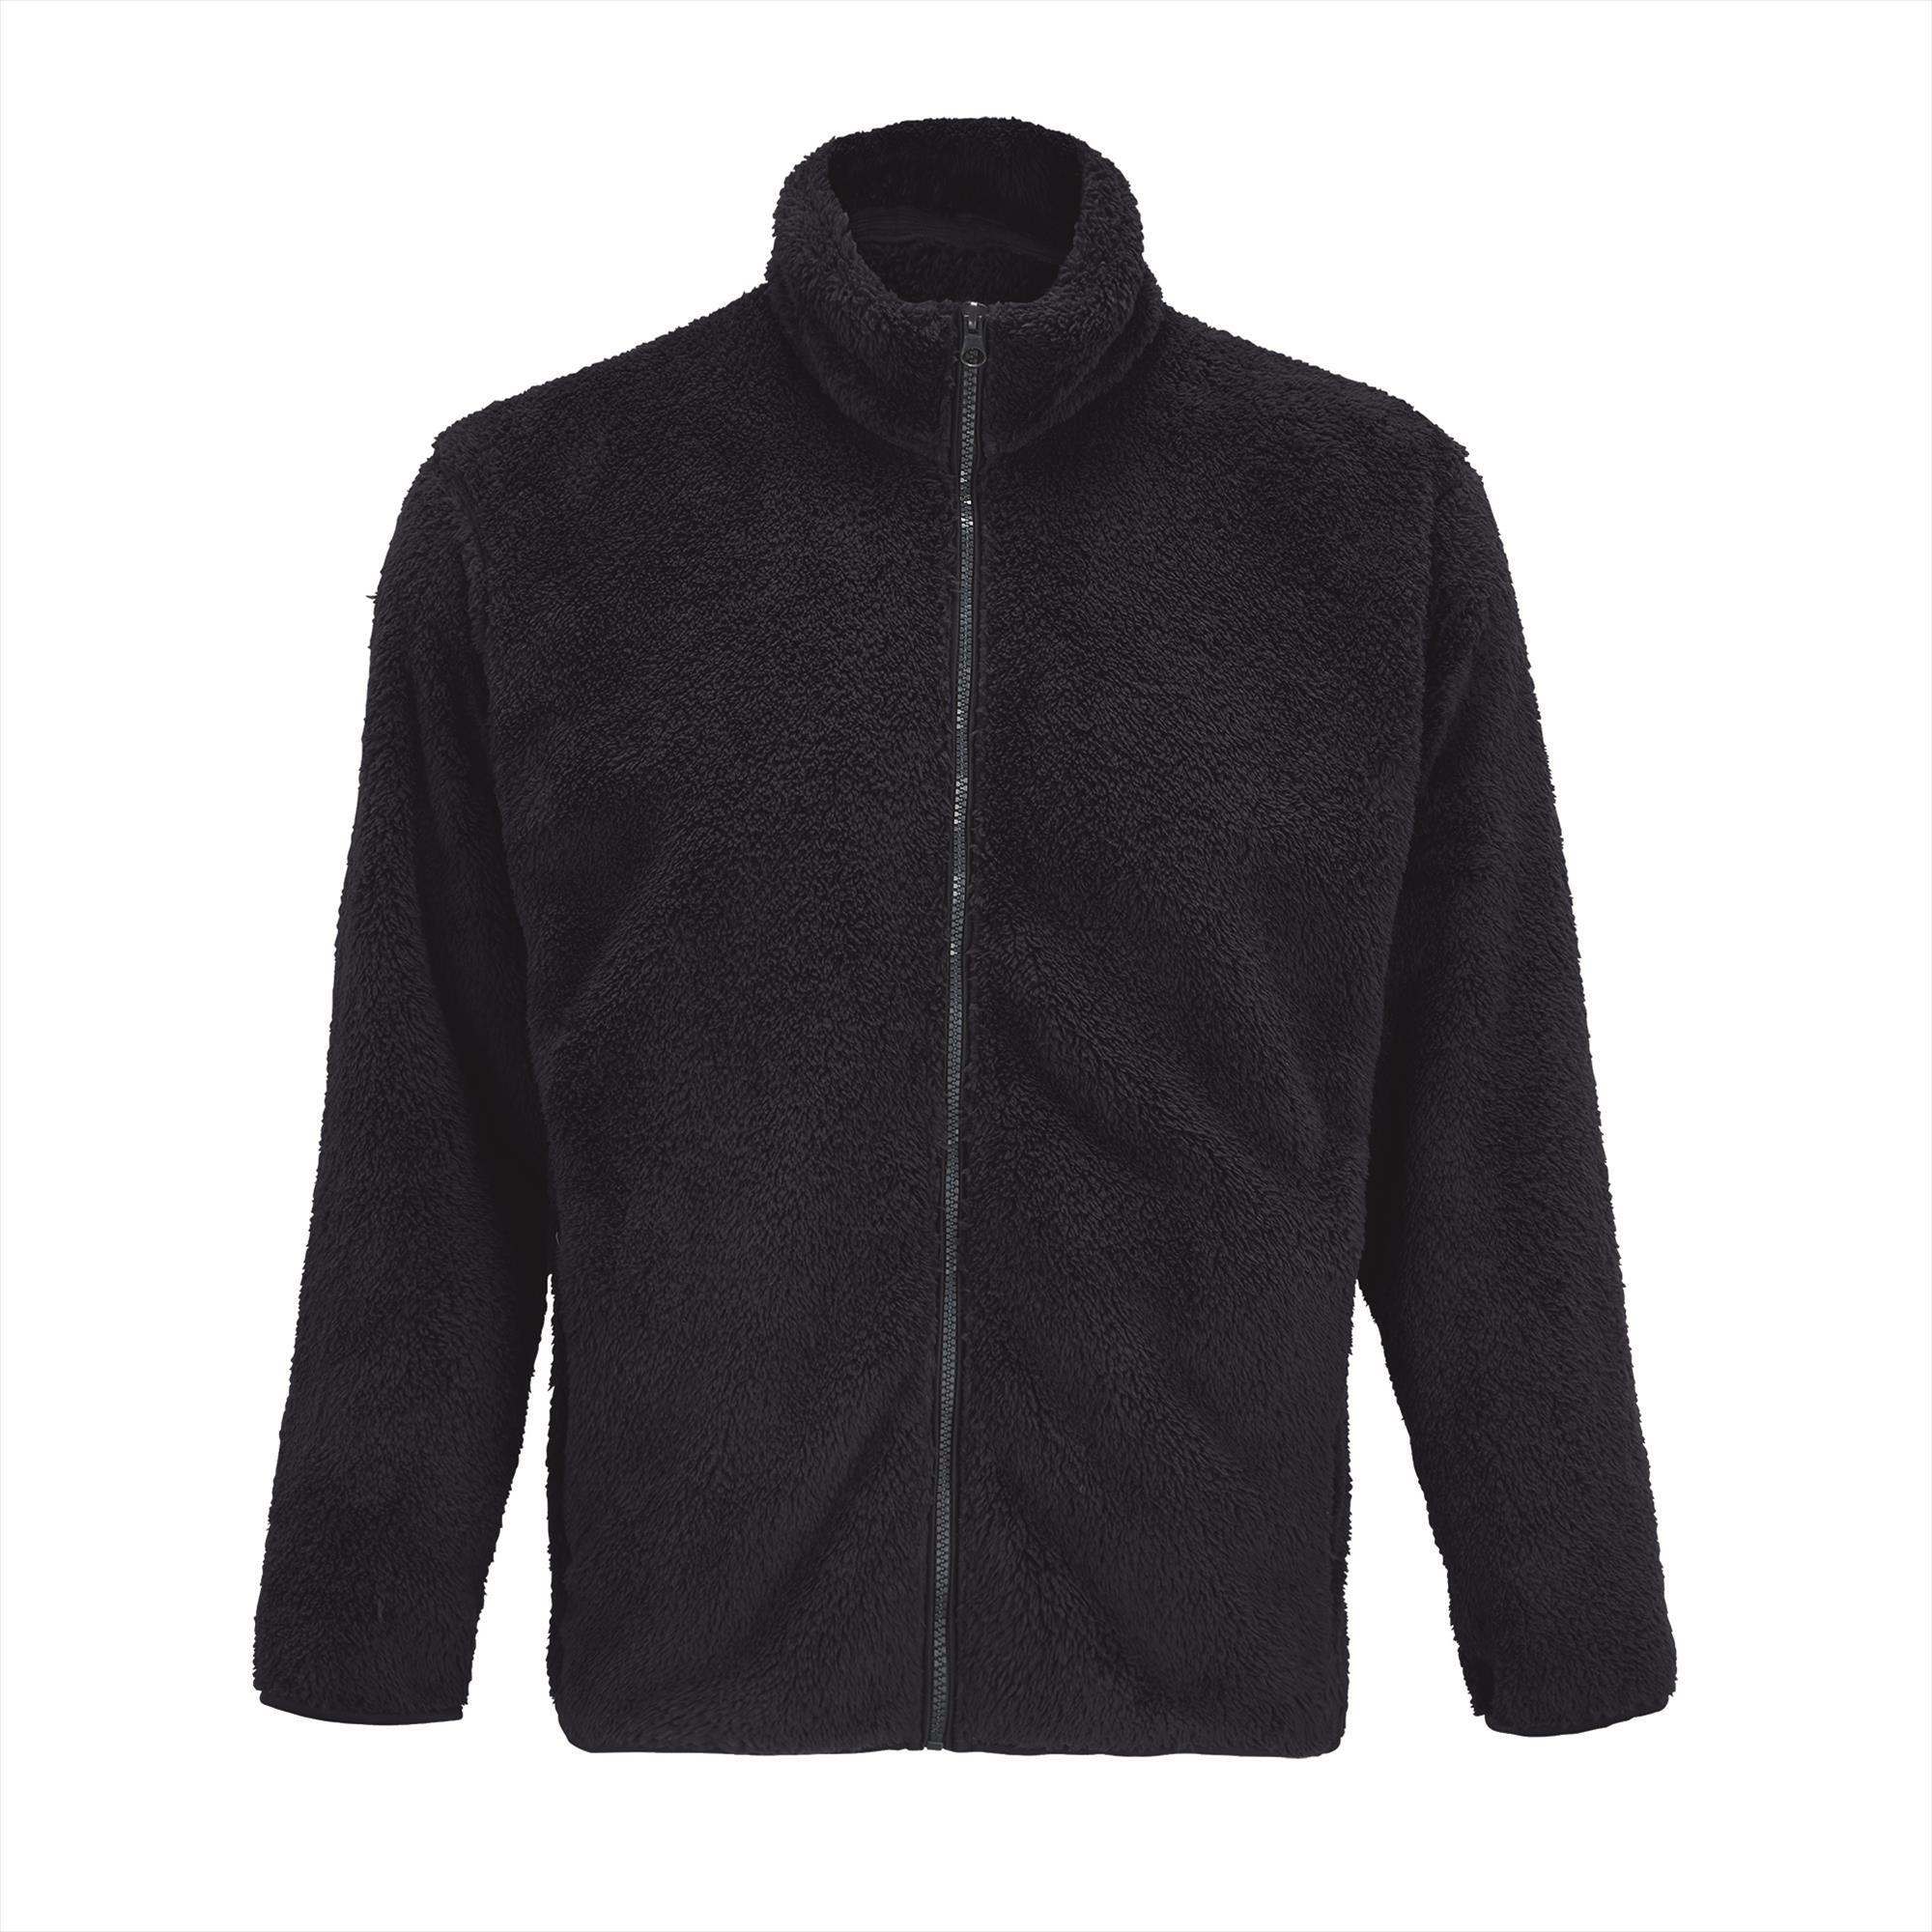 Unisex Fleece Zip Jacket donkerblauw jas